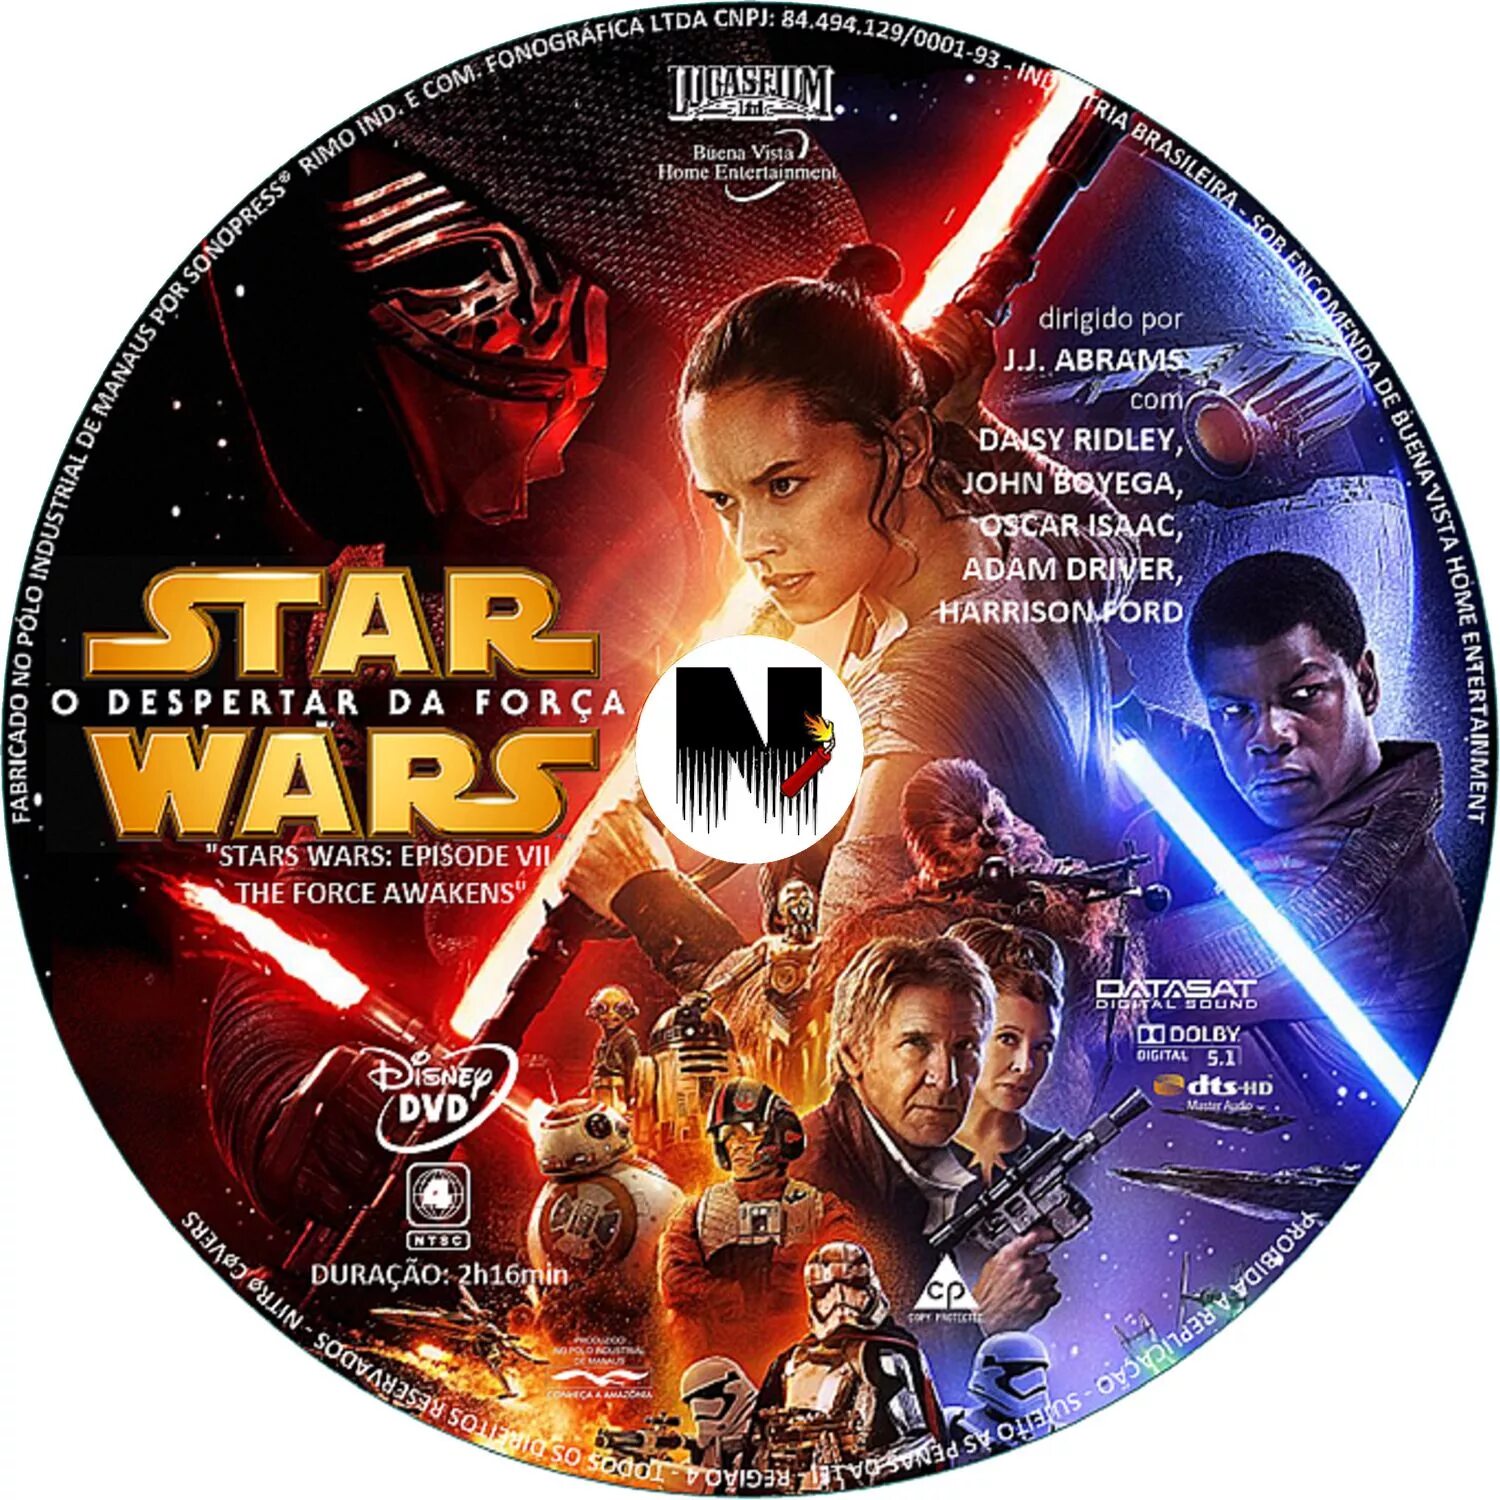 Звёздные войны: Пробуждение силы обложка DVD DVD. Звёздные войны диск двд. Эпизод 6 Звездные войны двд обложка. Звездные войны 3 диск. Звездный диск